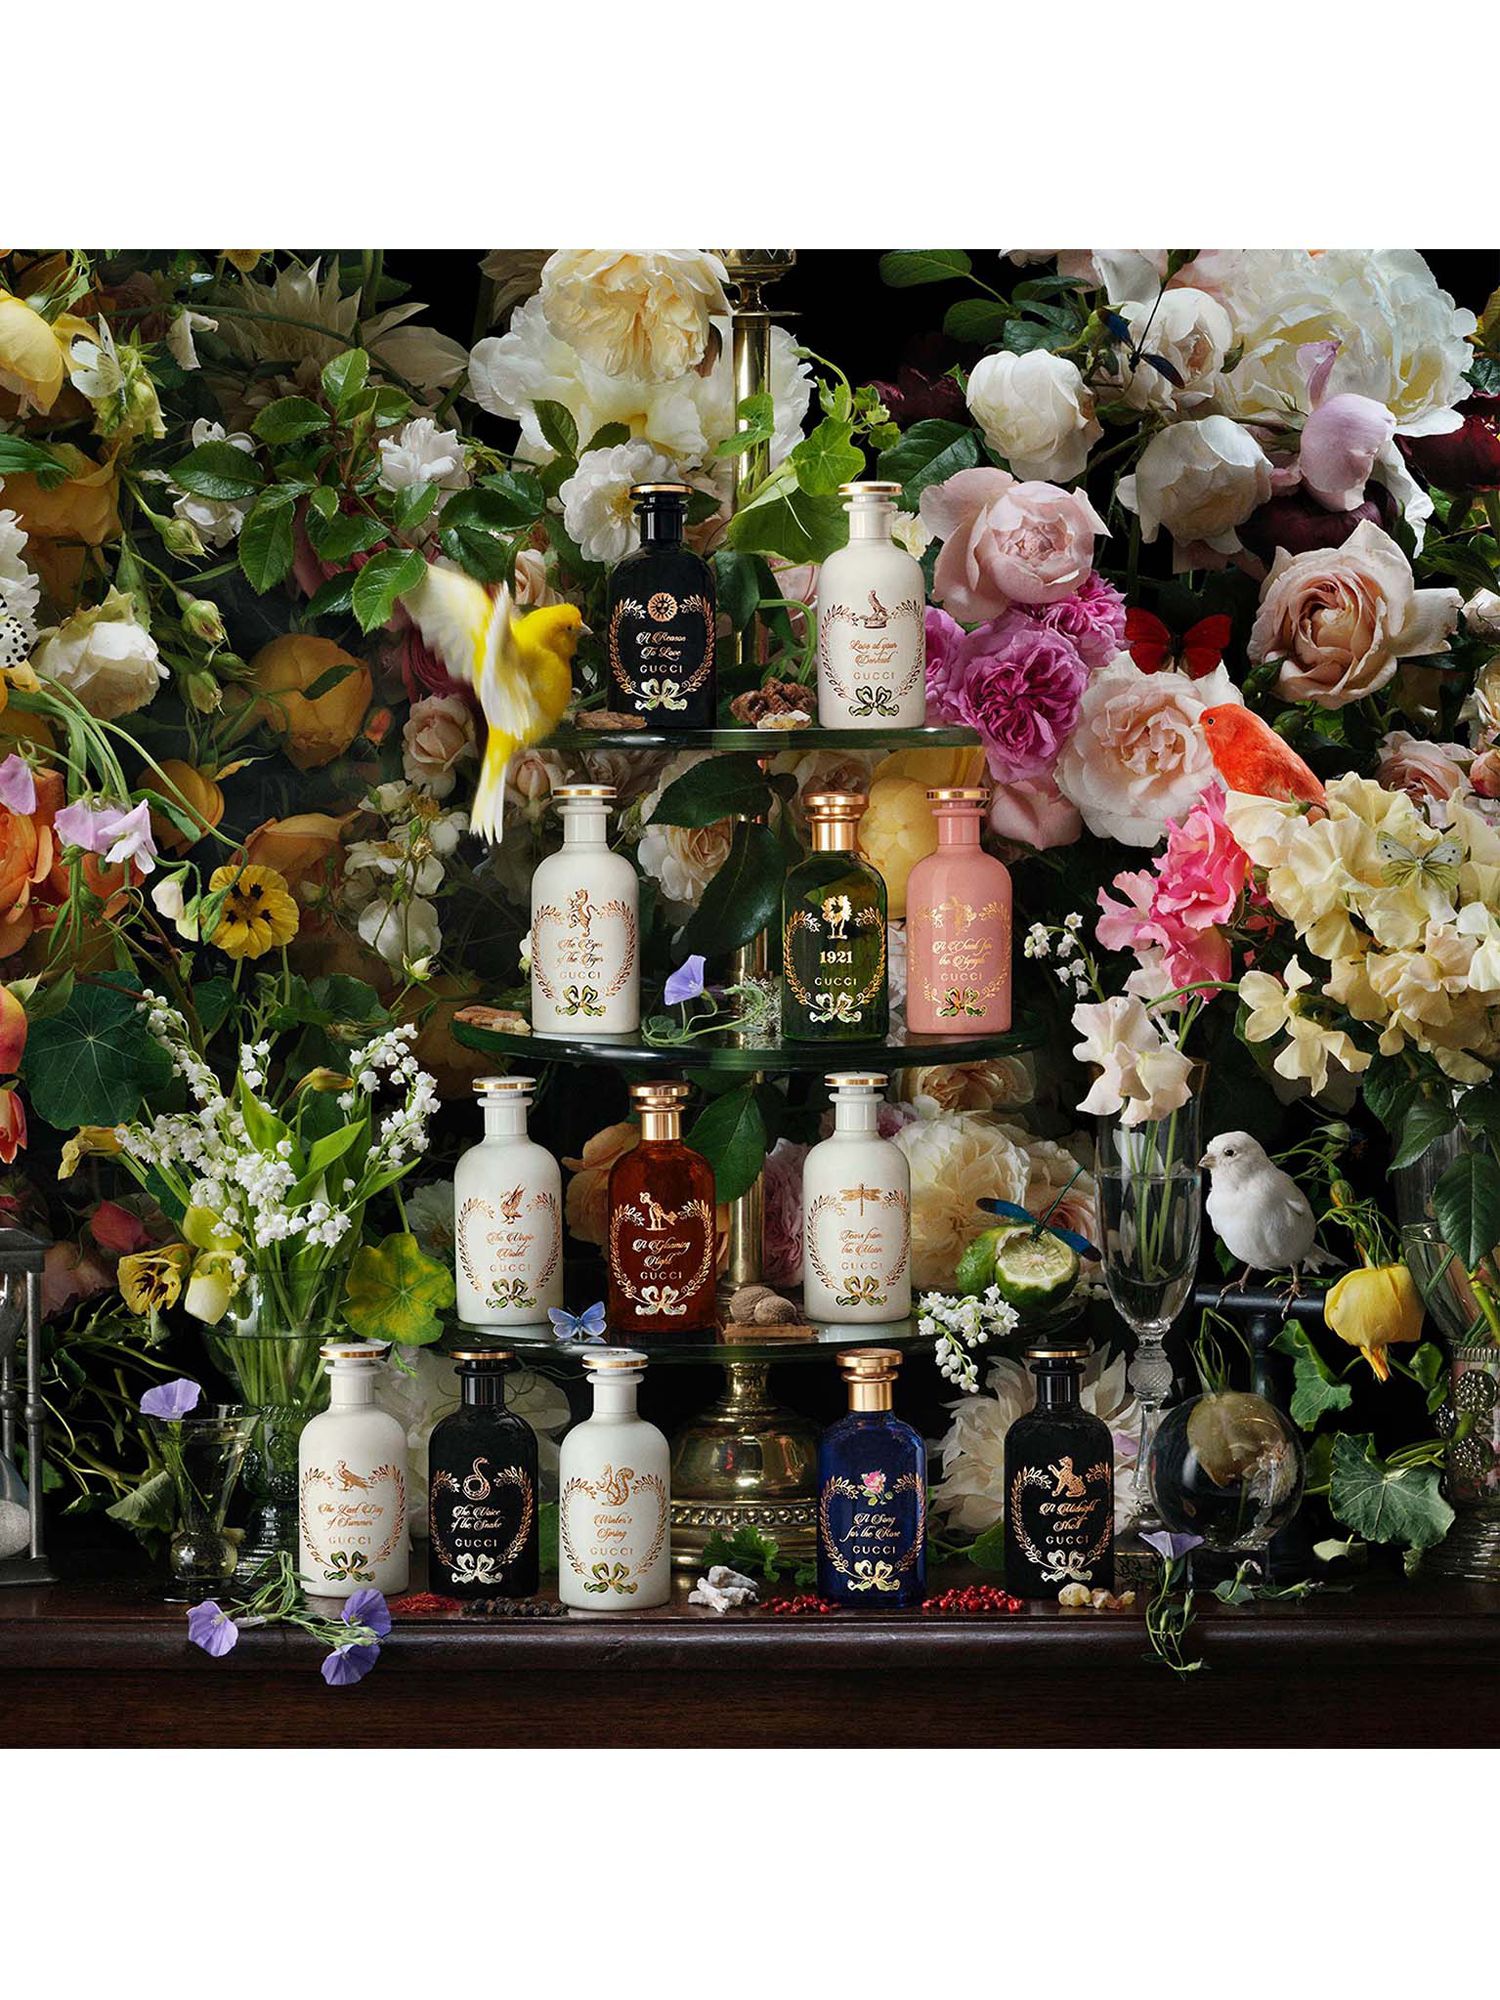 Gucci The Alchemist's Garden The Last Day of Summer Eau de Parfum, 100ml